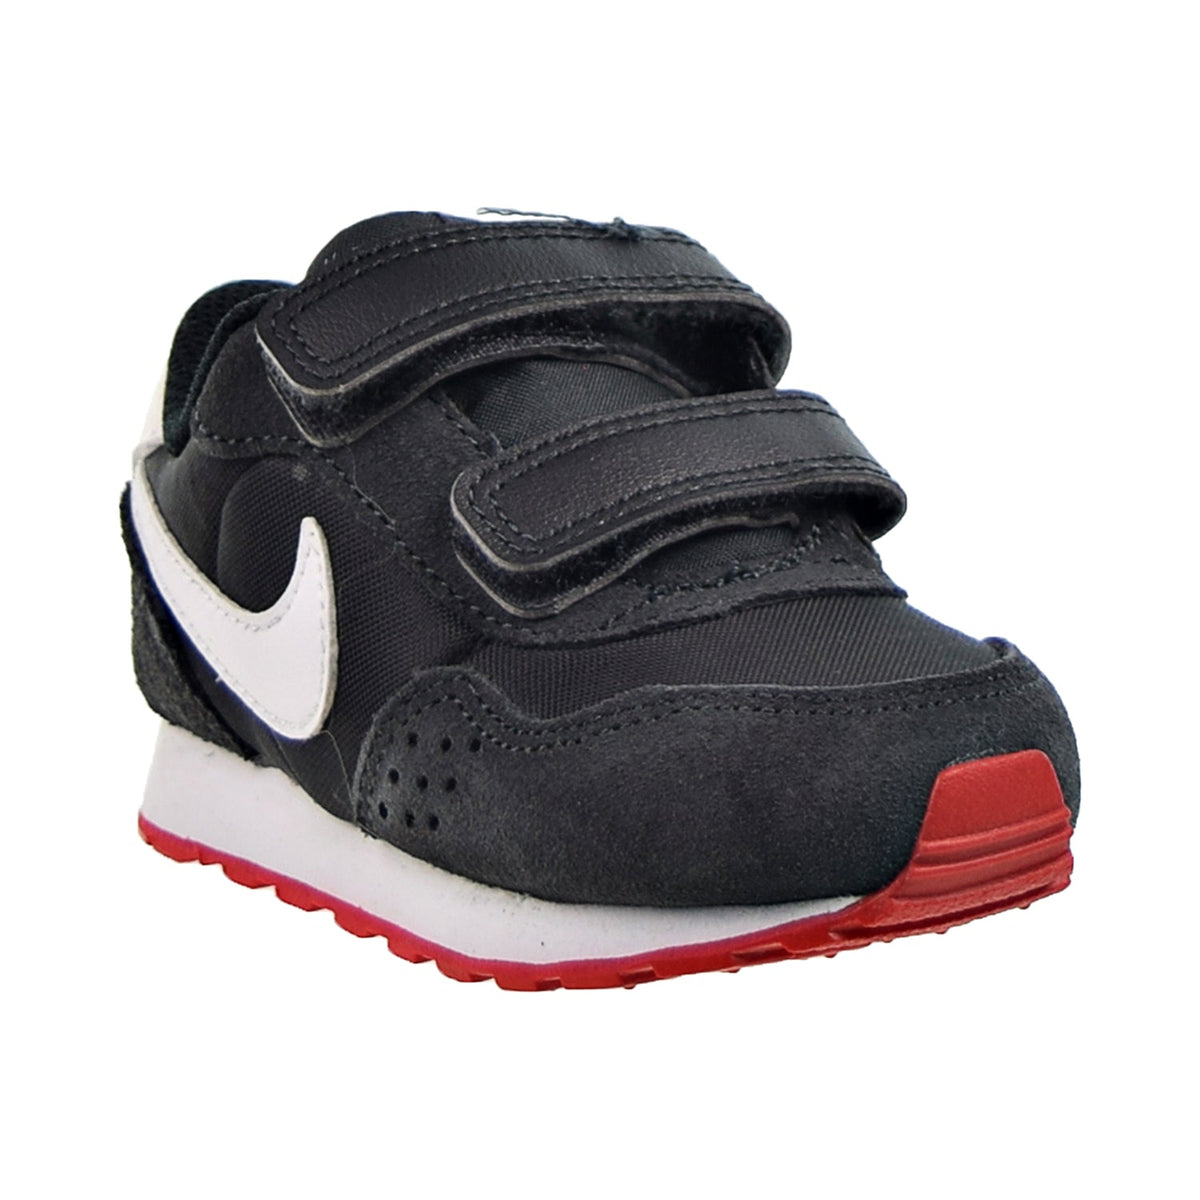 (TD) Valiant – MD Sports Smoke Plaza Grey-University NY Black-Dark Shoes Nike Toddler\'s